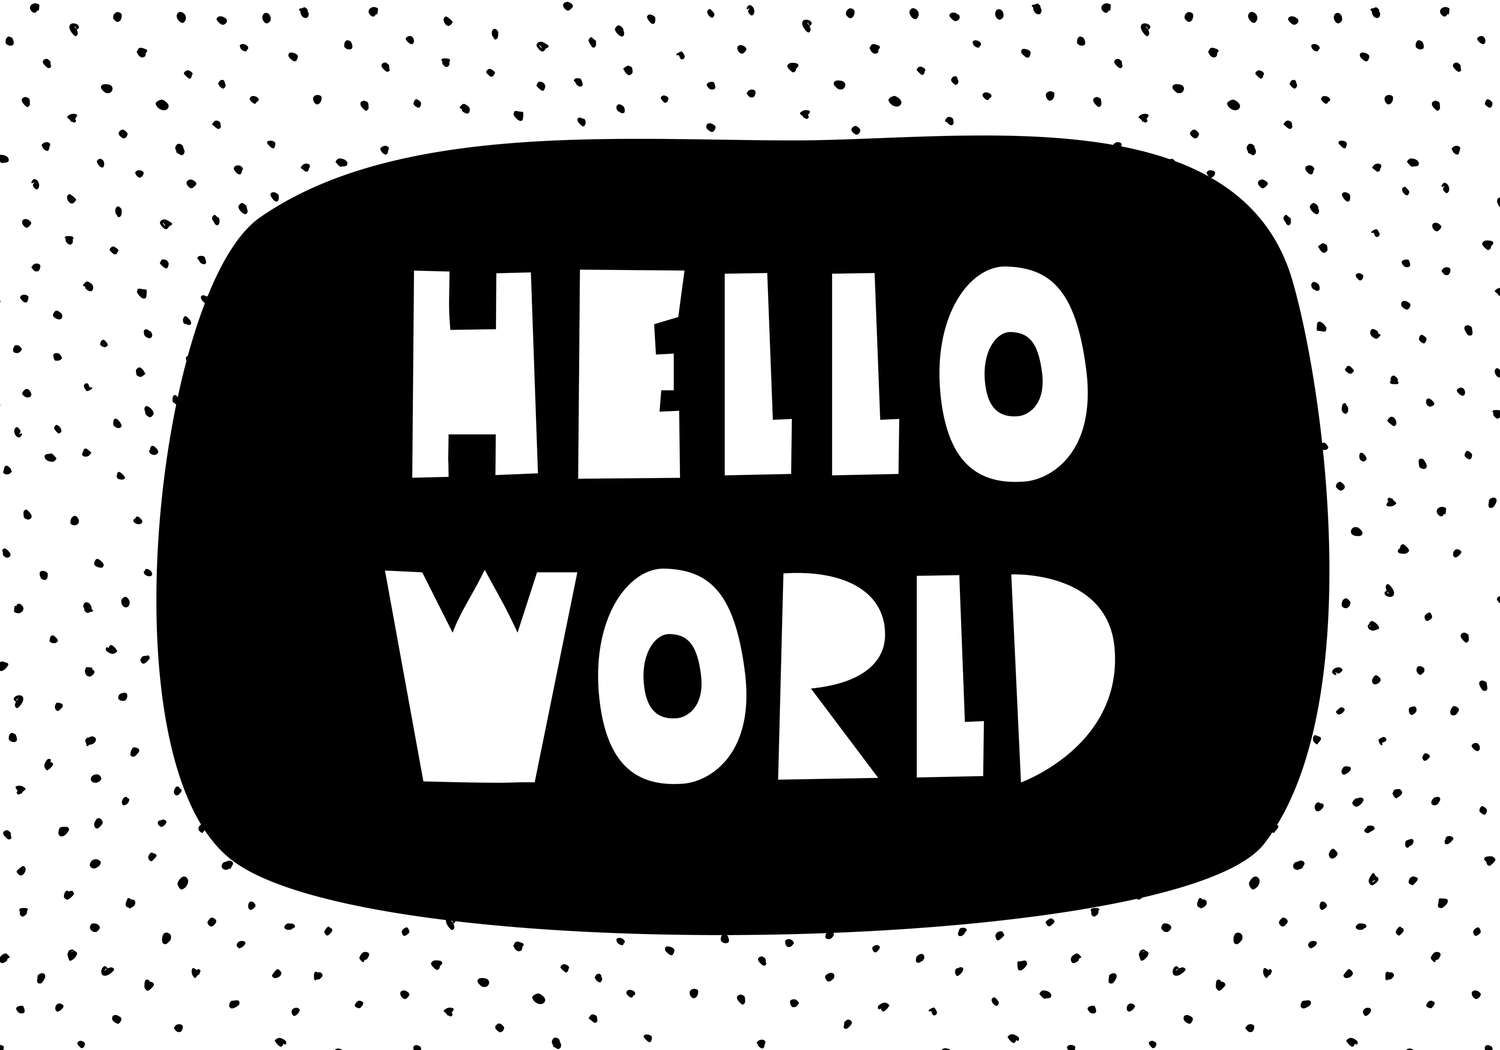             papiers peints à impression numérique pour chambre d'enfant avec inscription "Hello World" - intissé structuré
        